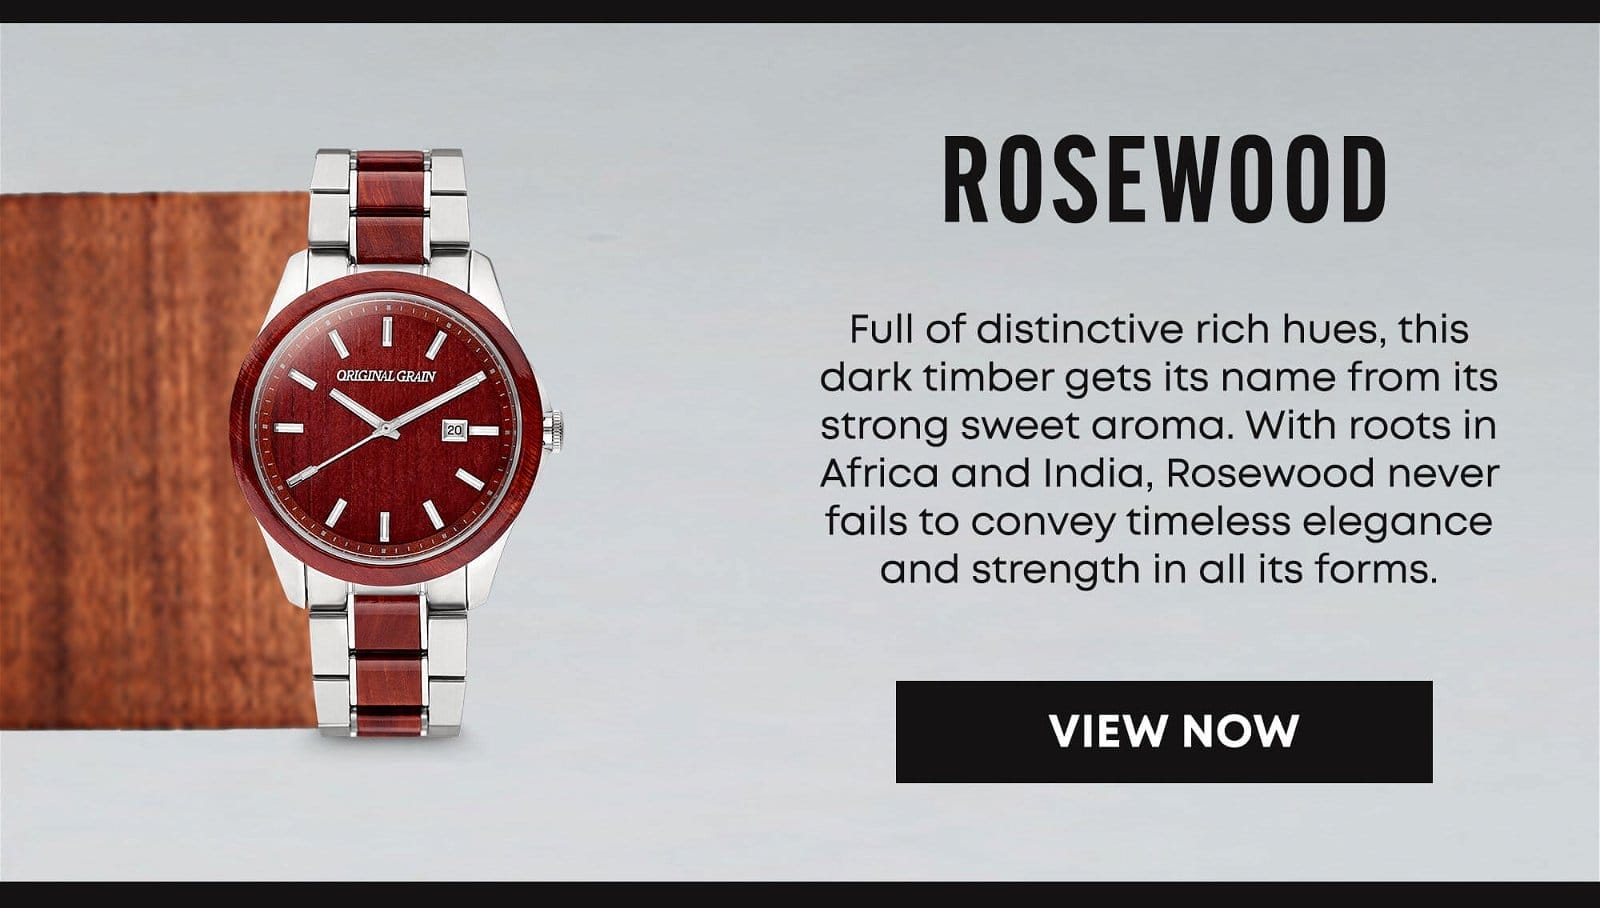 Original Grain Rosewood Watch Material